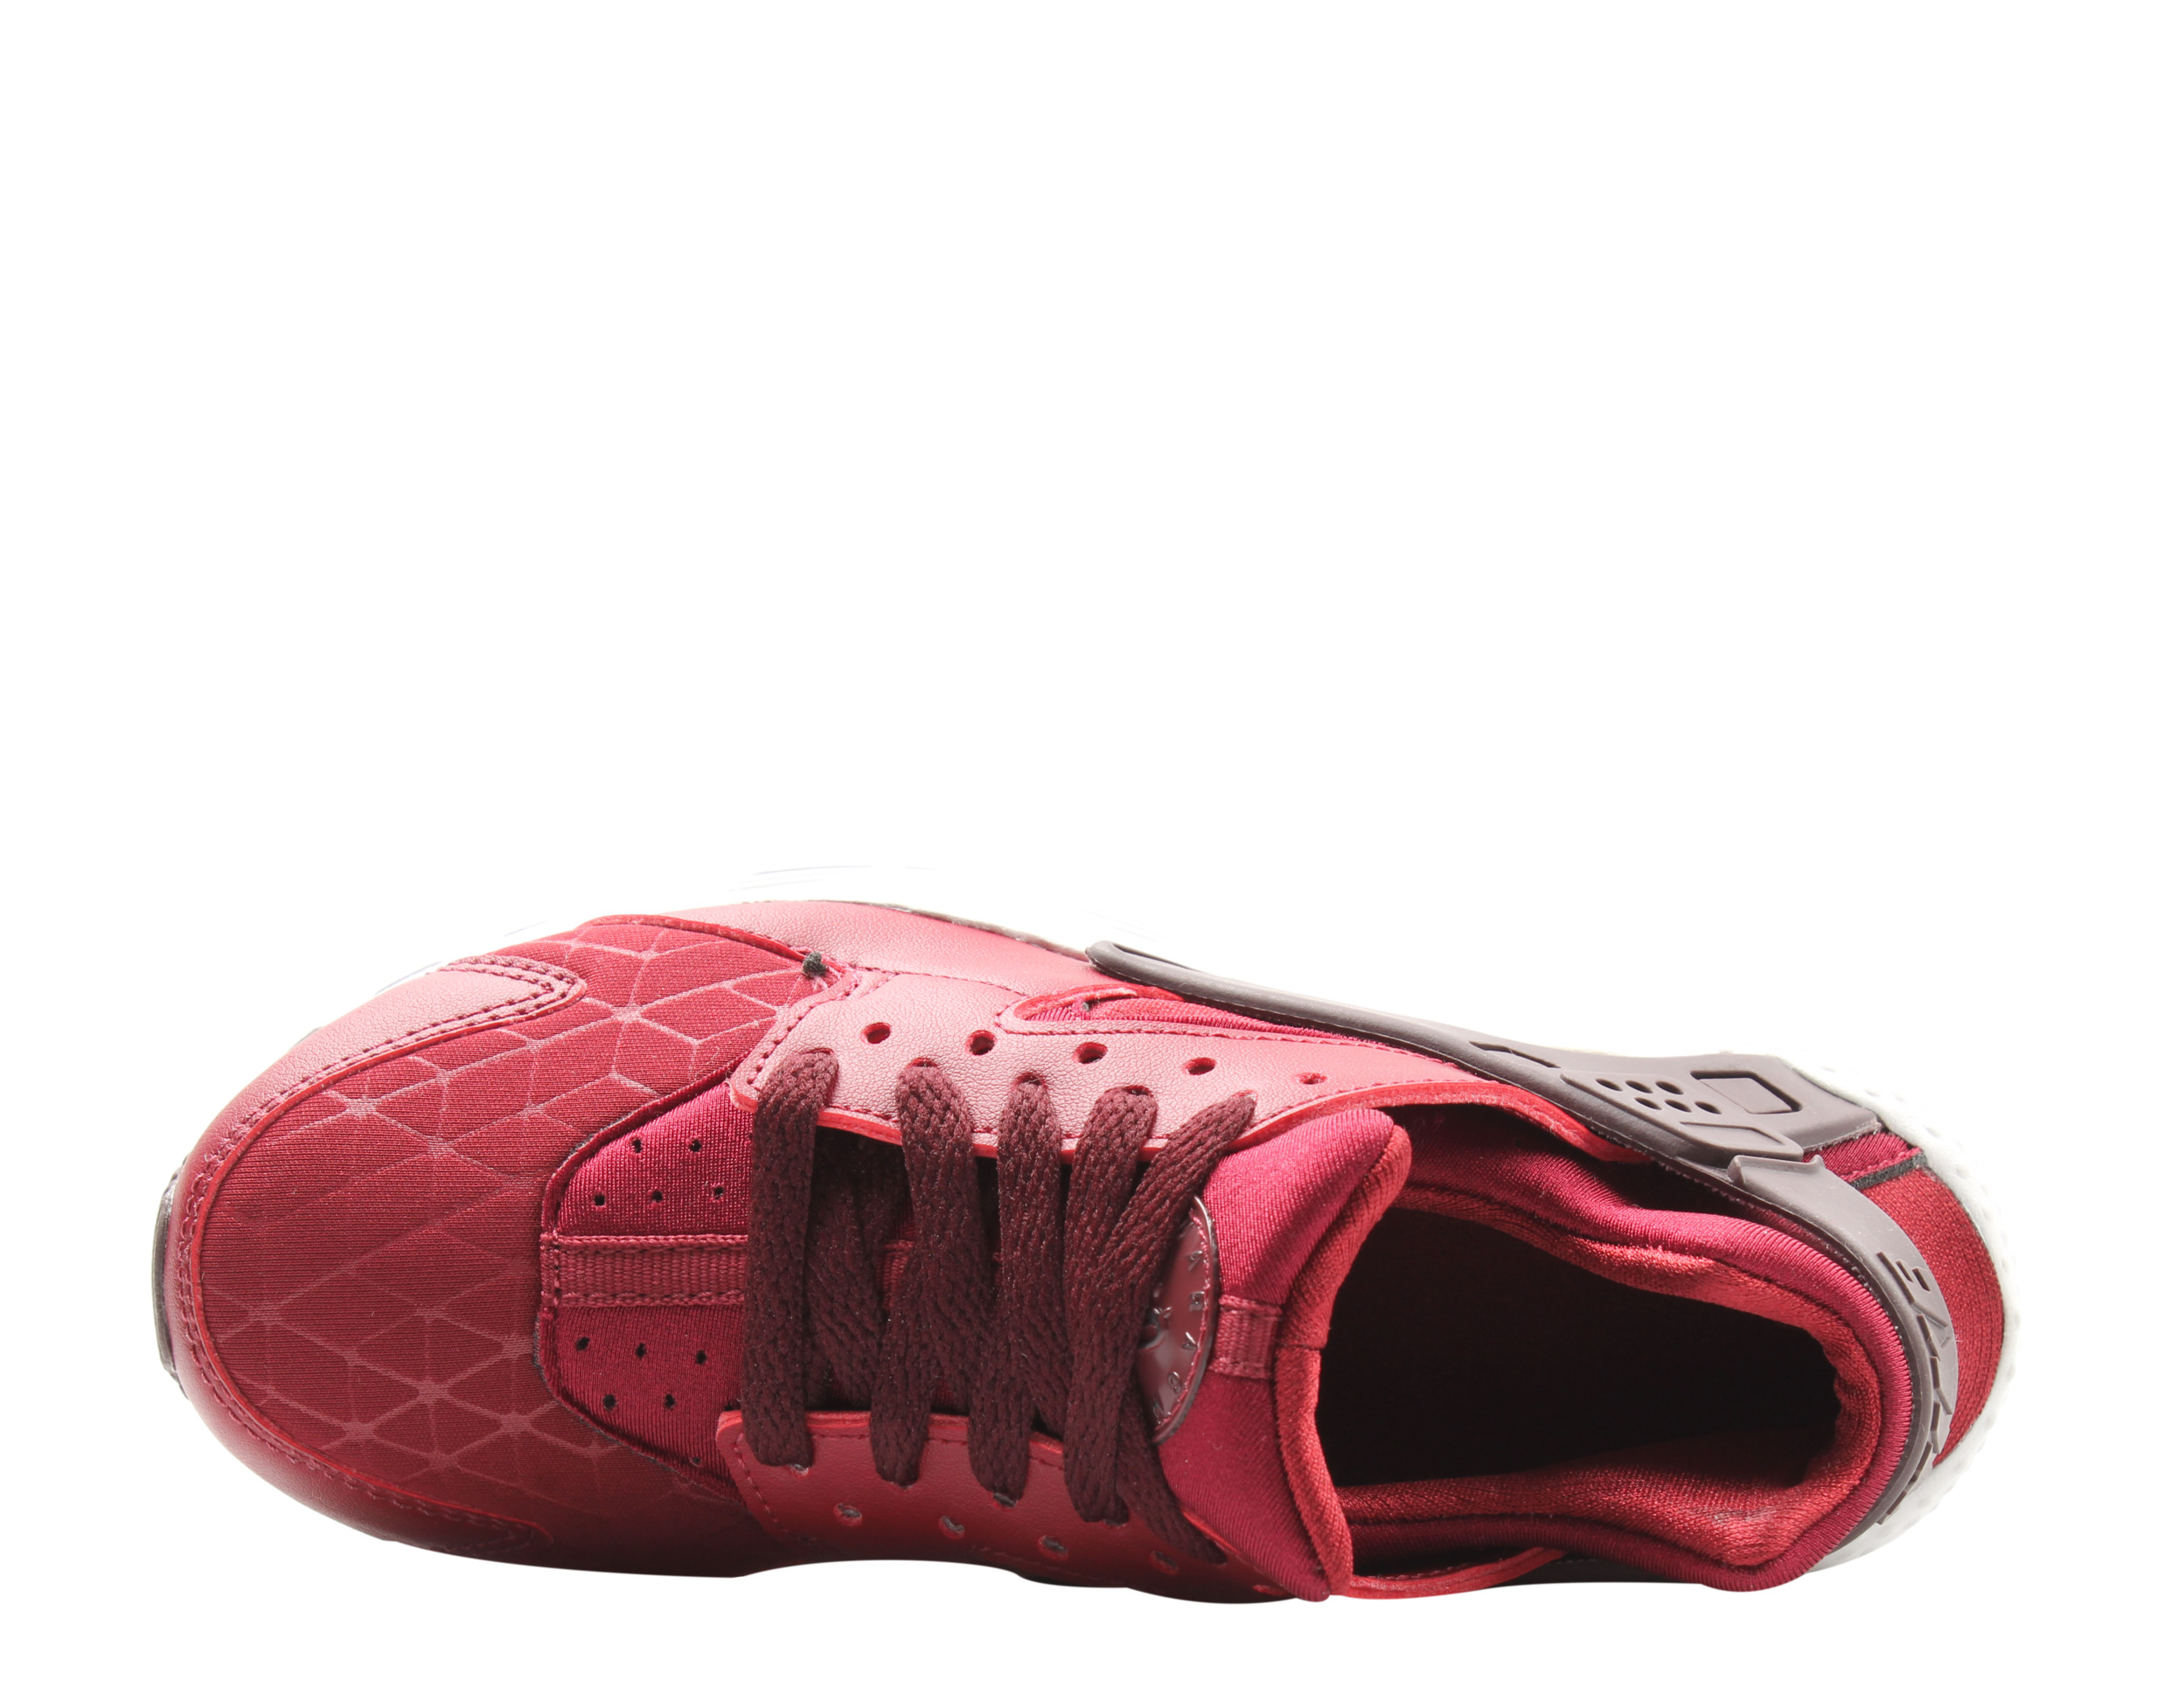 Nike Huarache Run TU (GS) Team Red/Burgundy Big Kids Running Shoes AV3228-600 - image 4 of 6